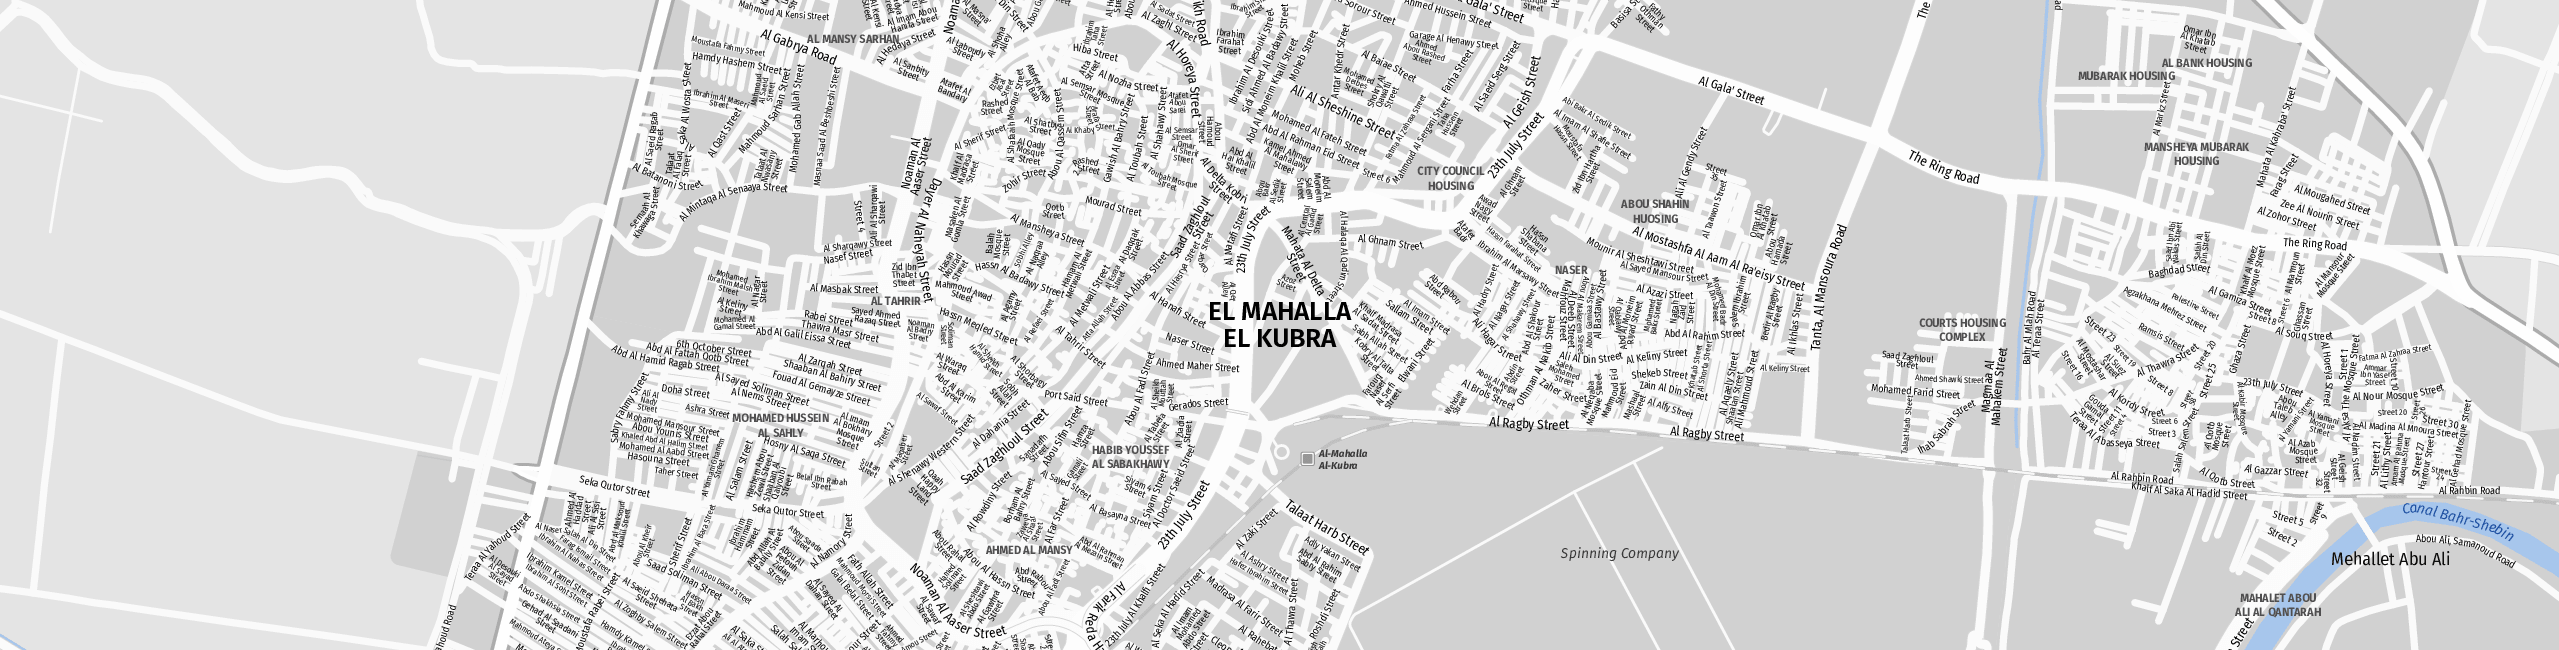 Stadtplan El Mahalla El Kubra zum Downloaden.